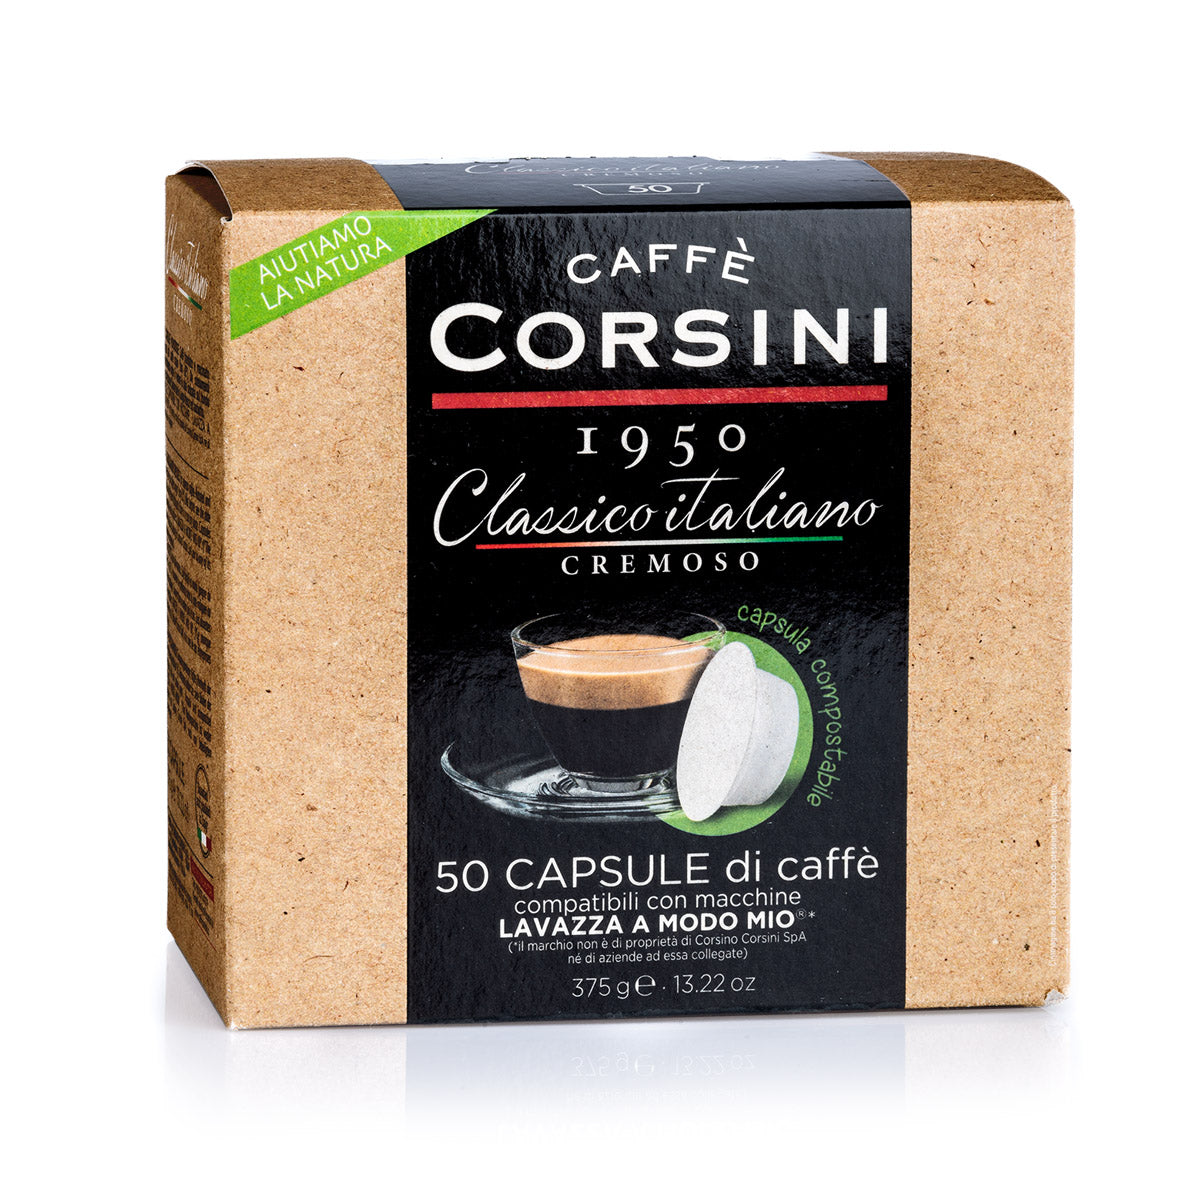 50 Lavazza®* A Modo Mio®* compatible coffee capsules per pack | Classico Italiano | Gusto cremoso | Box of 4